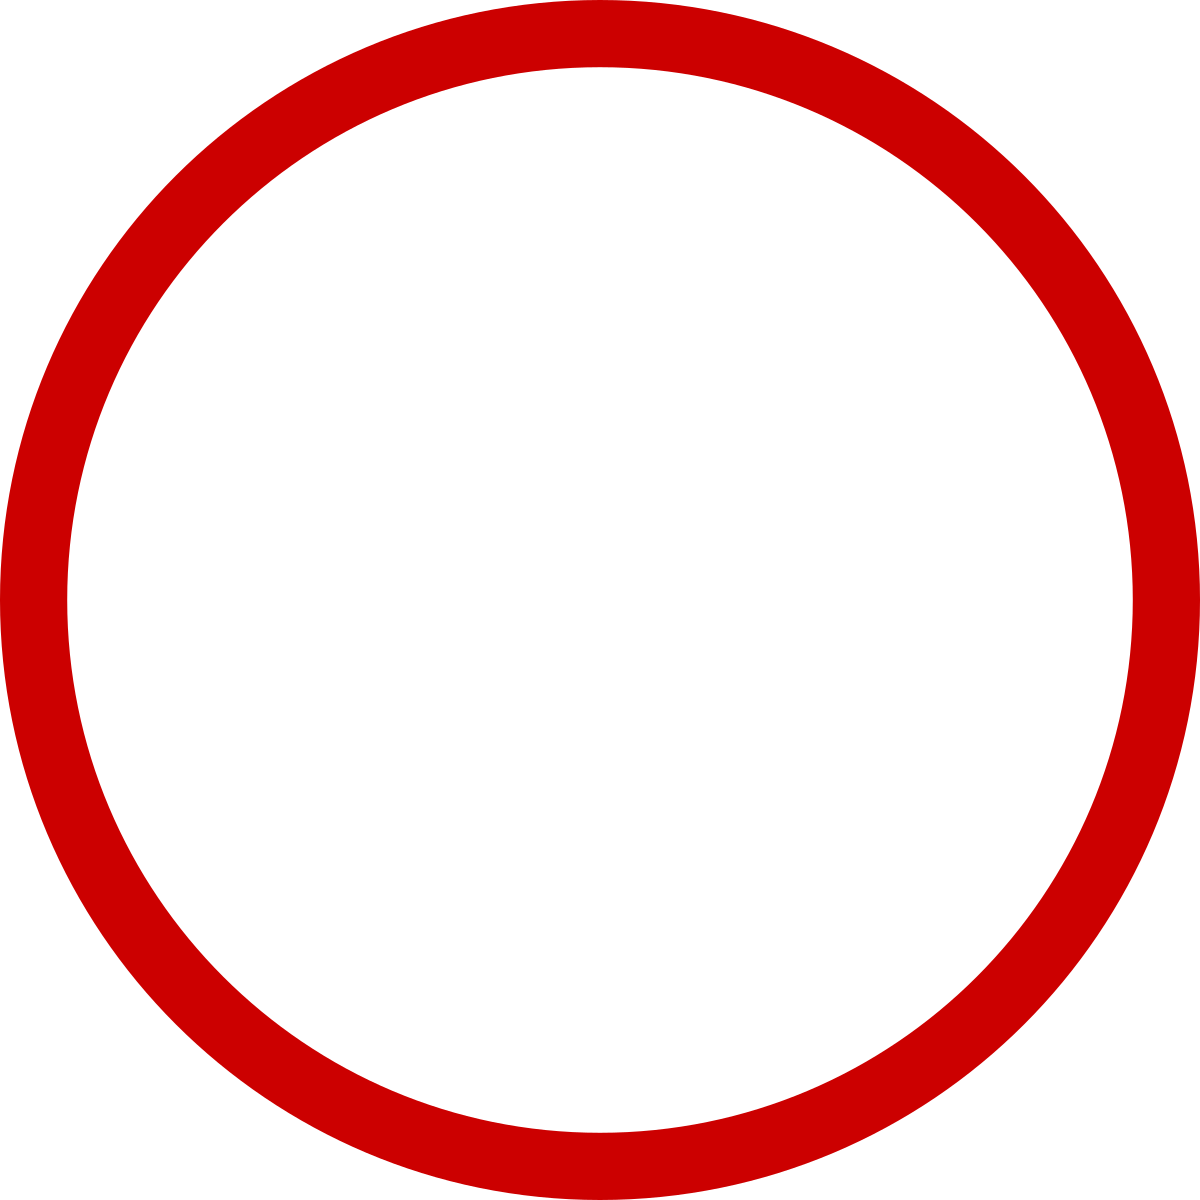 Circular Frame PNG Image File